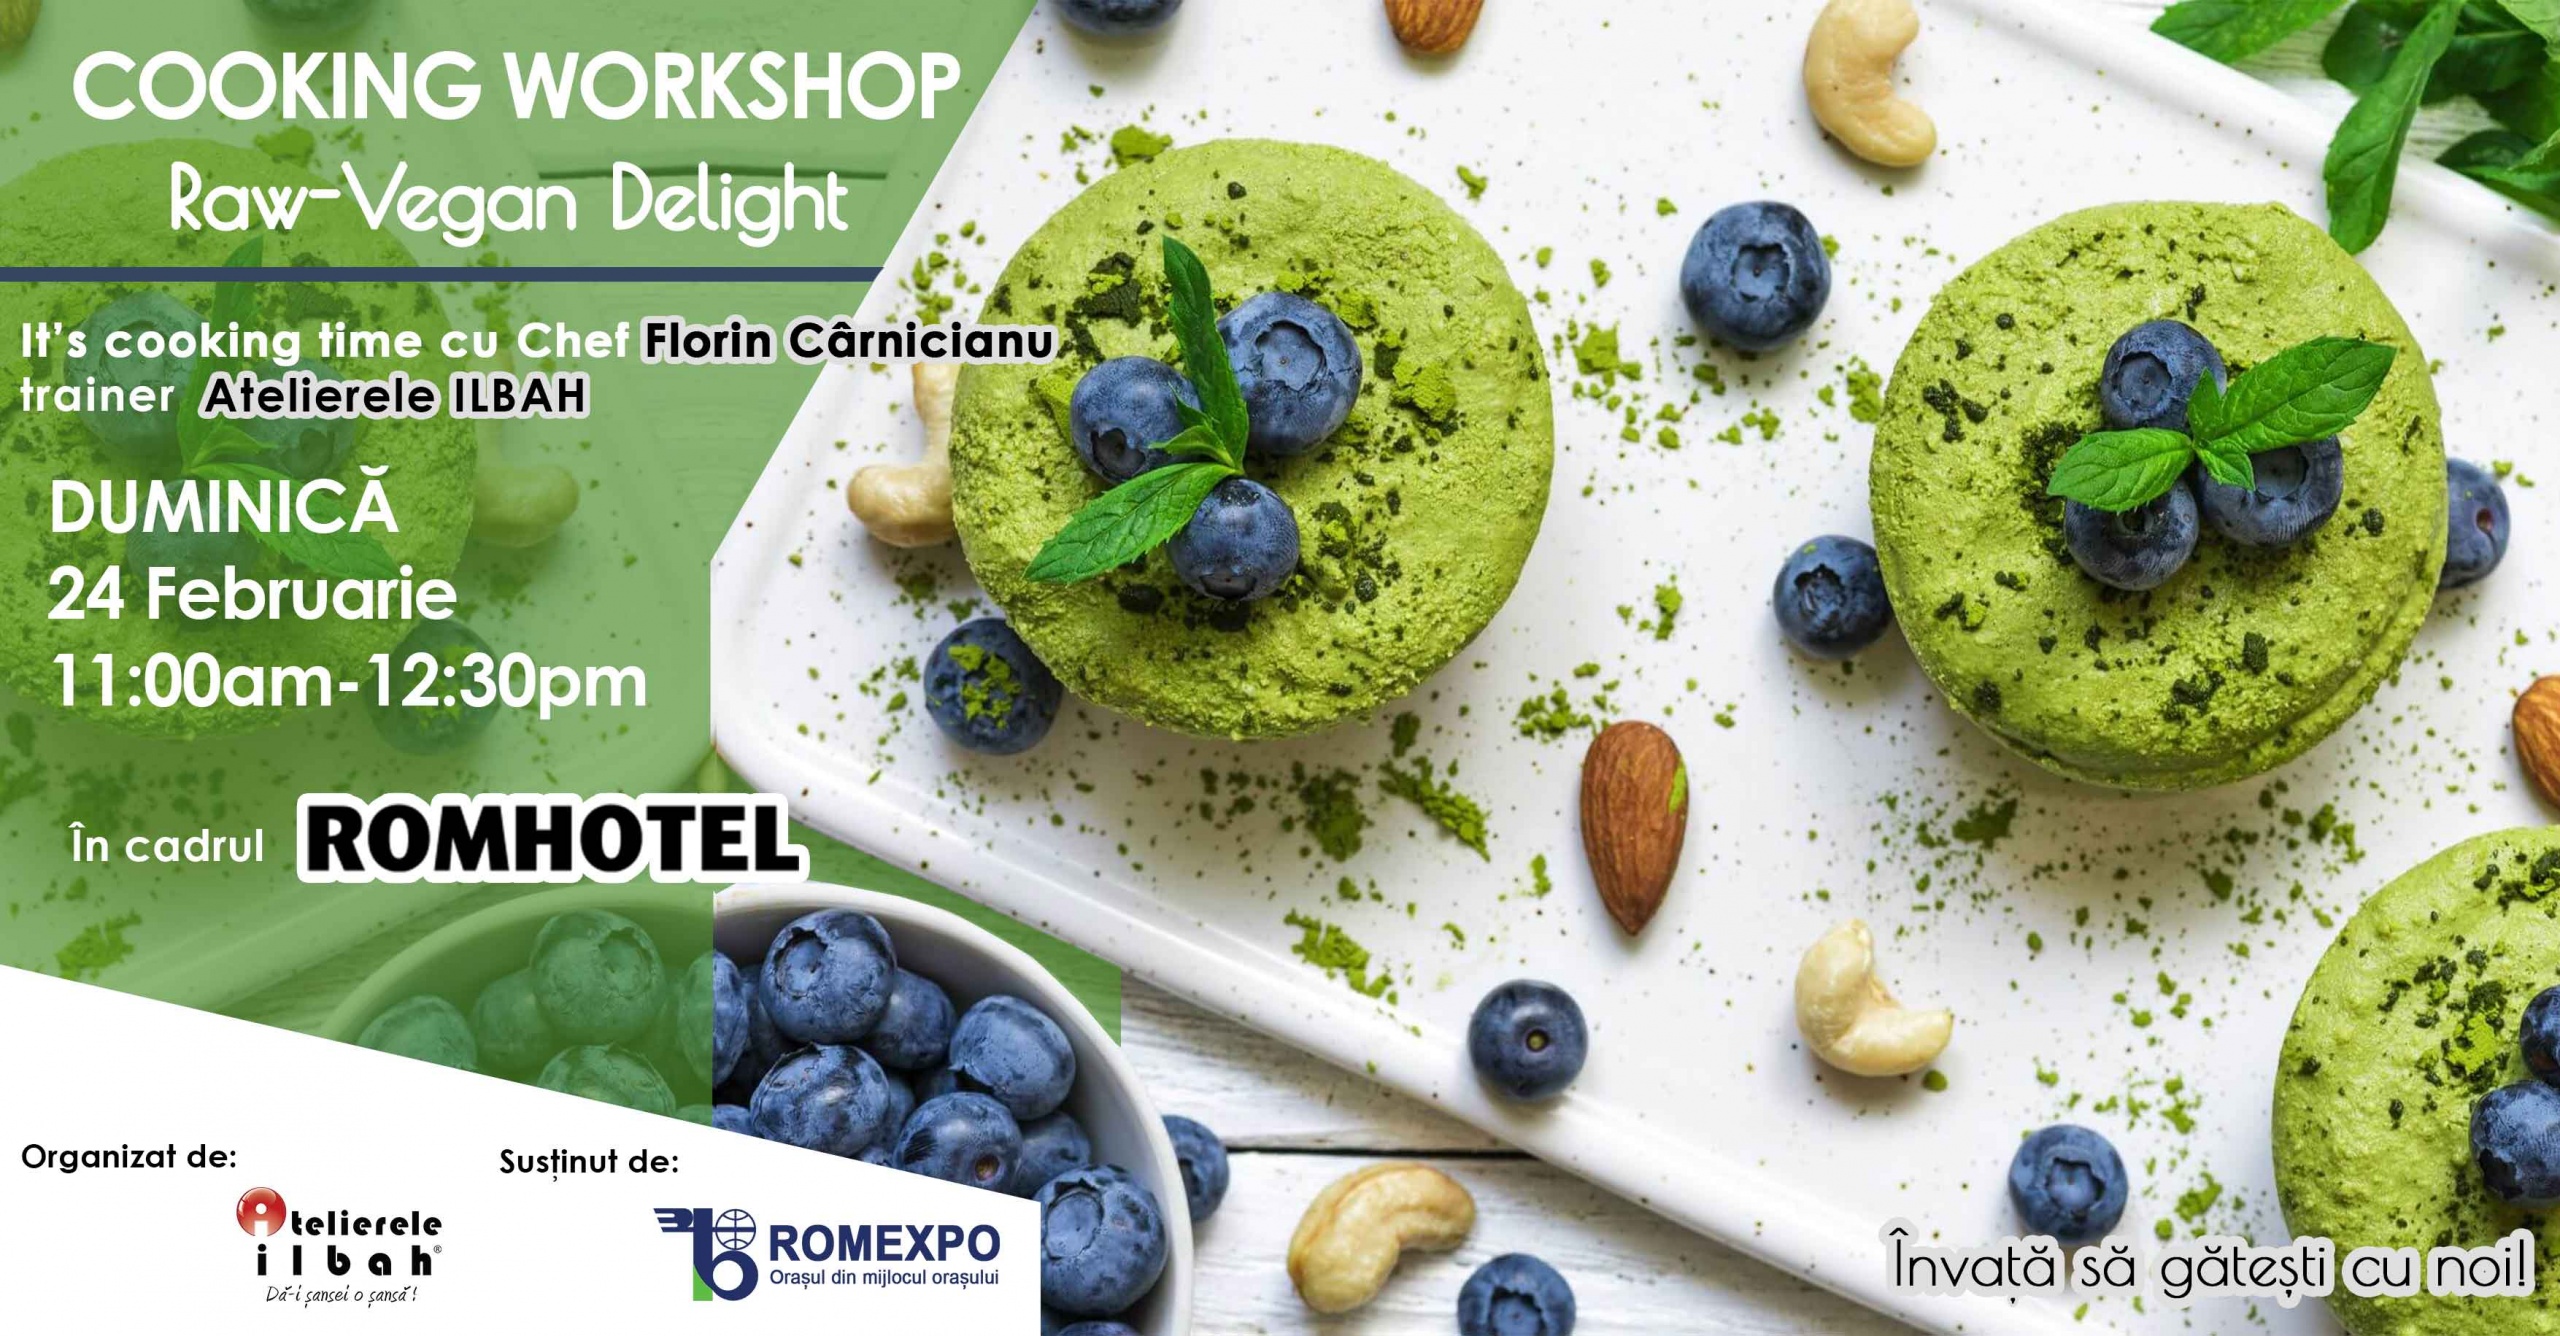 nu-rata-workshopurile-de-cooking-organizate-de-atelierele-ilbah-in-cadrul-romhotel-2019-8